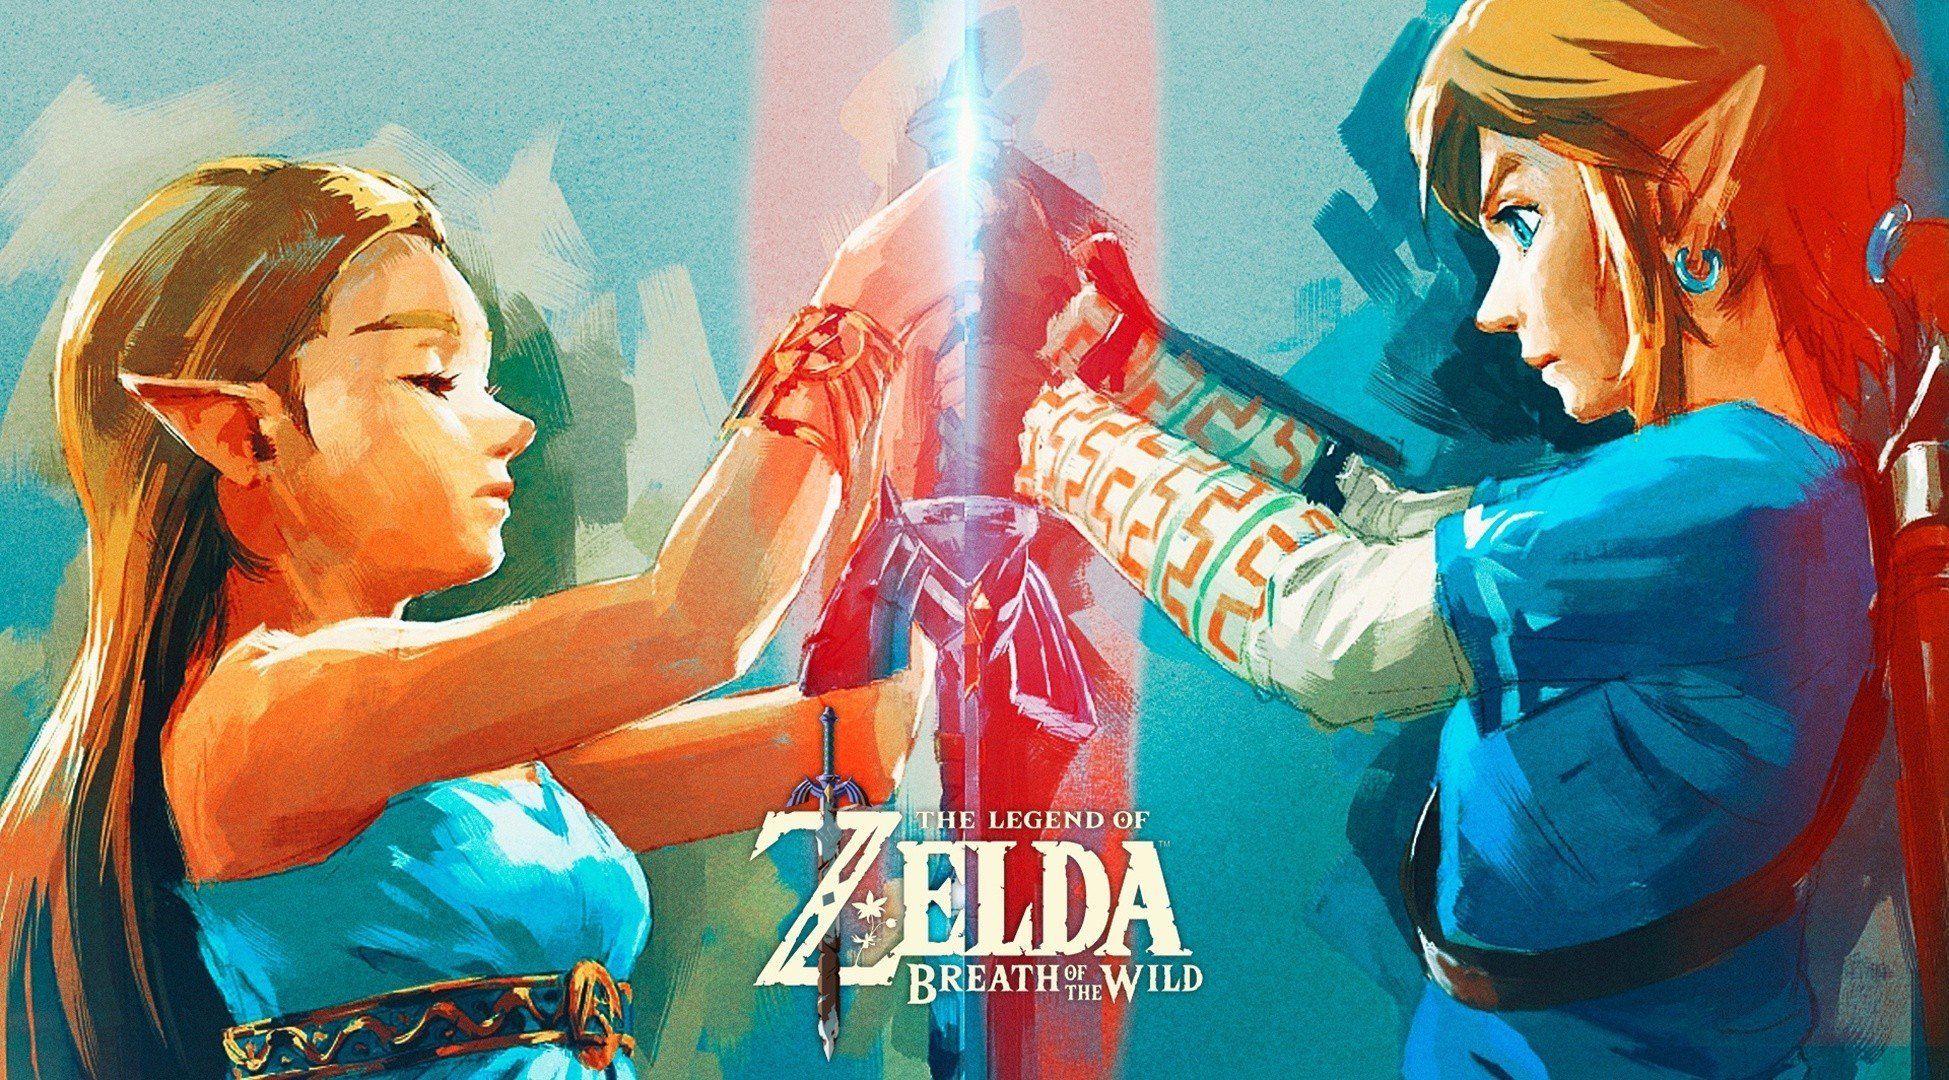 Link, Zelda, Princess Zelda, The Legend of Zelda: Breath